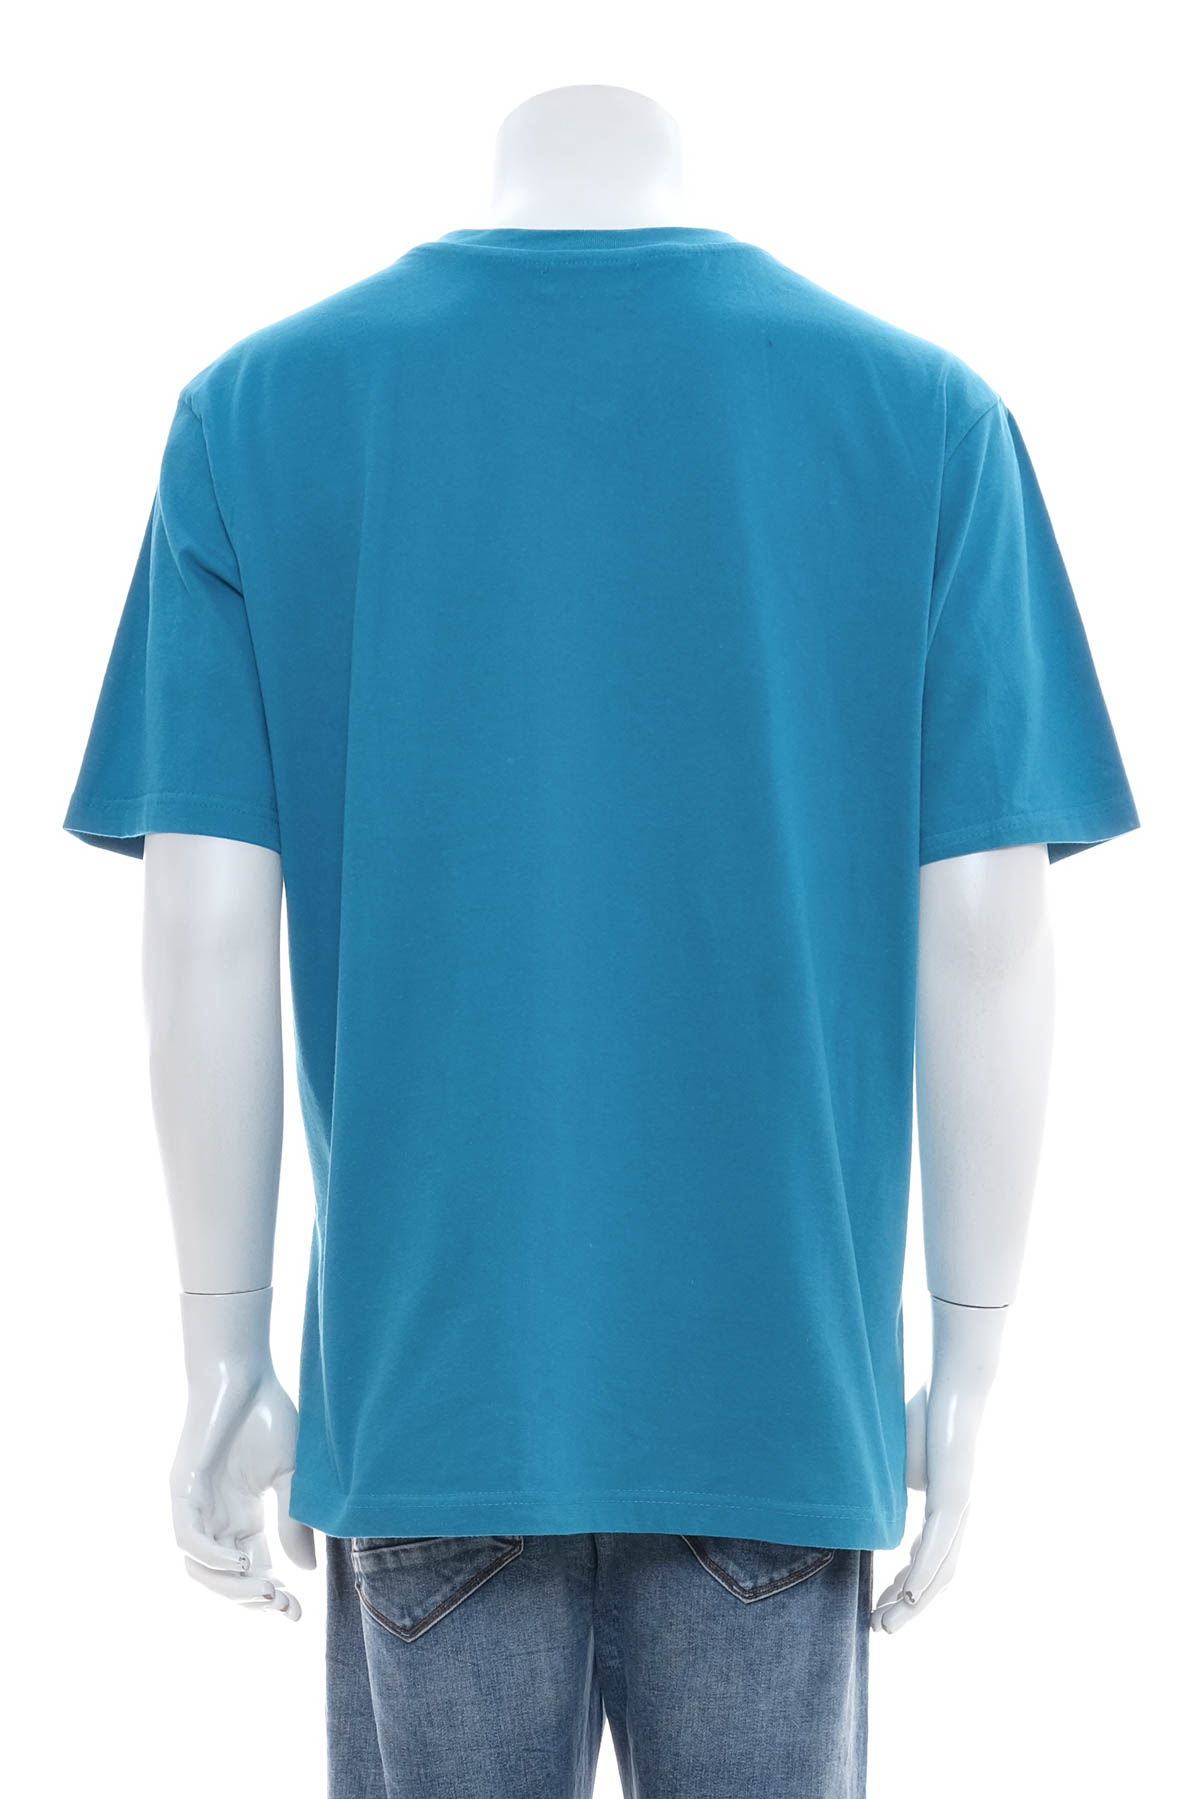 Ανδρικό μπλουζάκι - ATLAS for MEN - 1